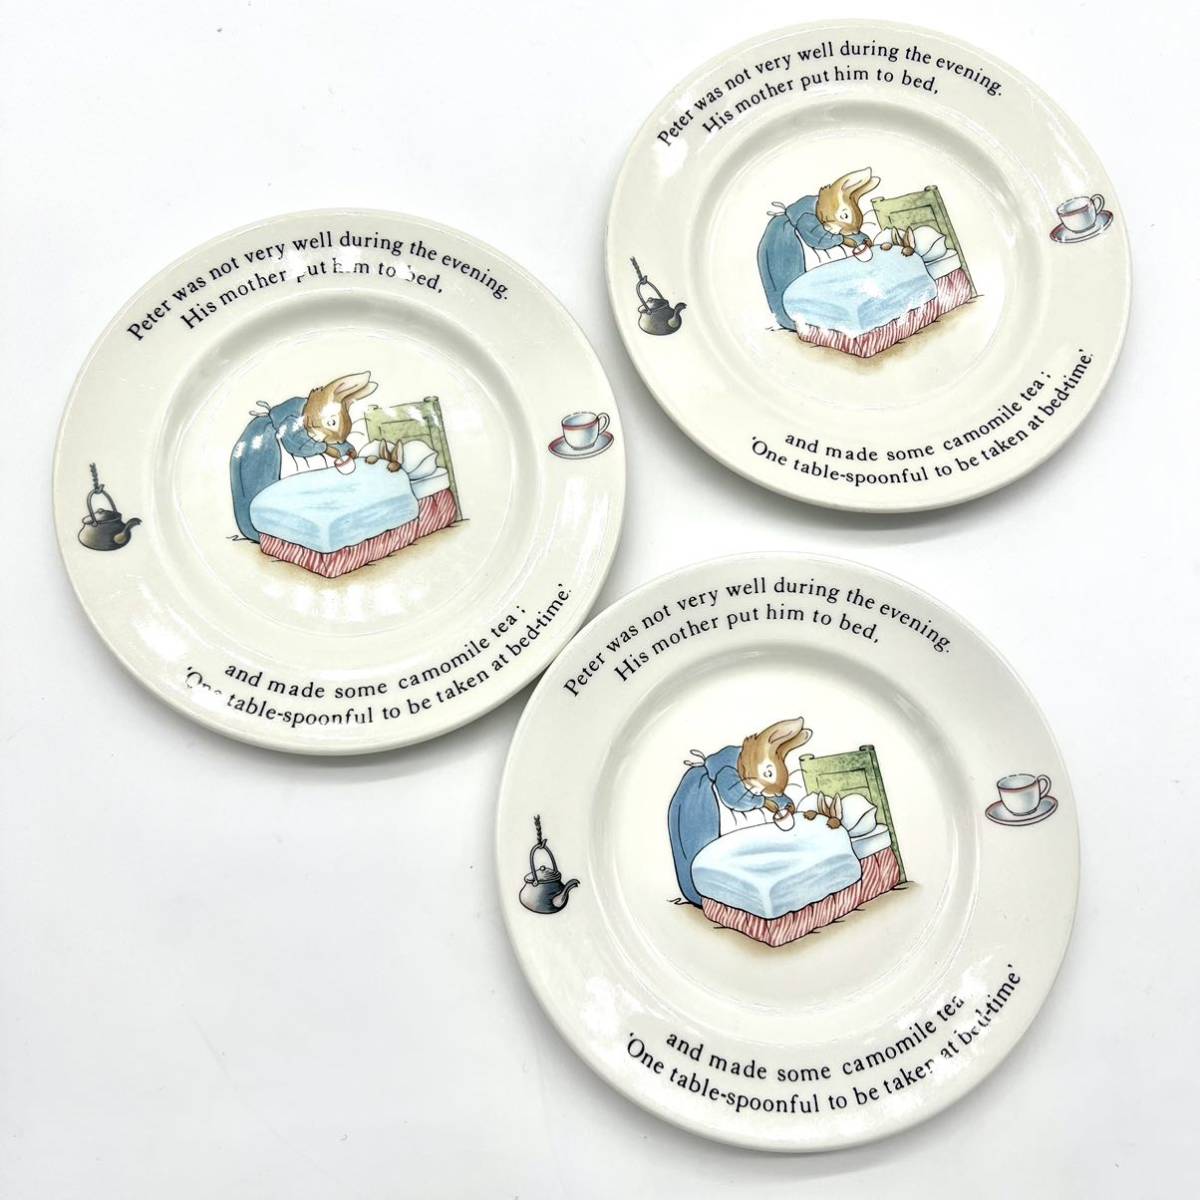 レア ヴィンテージ 廃盤 旧刻印 WEDGWOOD ピーターラビット プレート 皿 陶器 食器 ビンテージ コレクション ウェッジウッド アンティーク_画像2